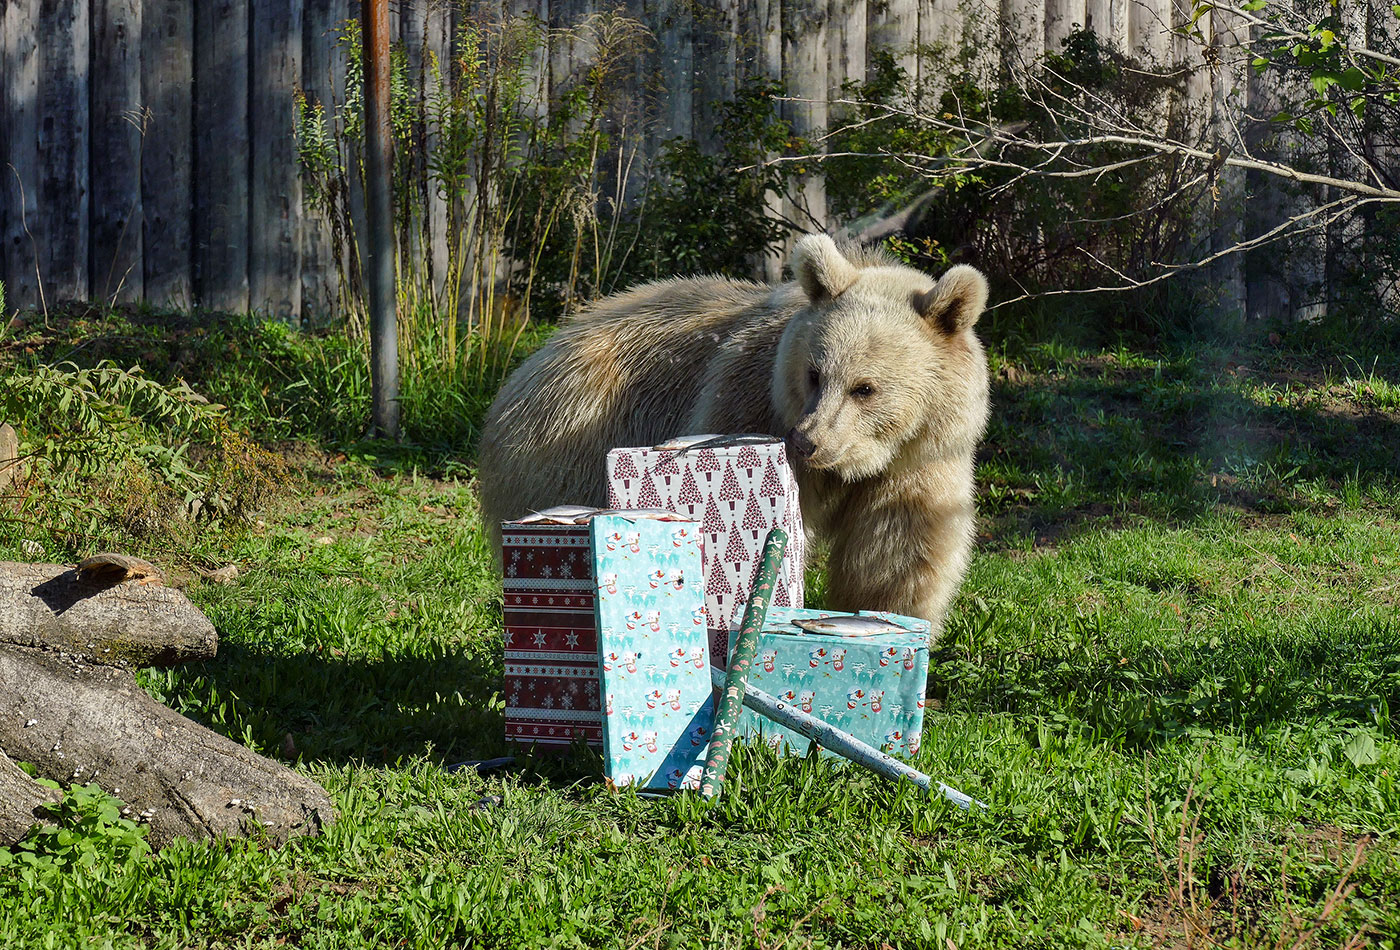 Weihnachtsgeschenke für die Zootiere: Die Syrischen Braunbären würden sich über einen großen Eimer Honig freuen. Ob dieser Wunsch wohl in Erfüllung geht? (Foto: Heidrun Knigge/Zoo Heidelberg)